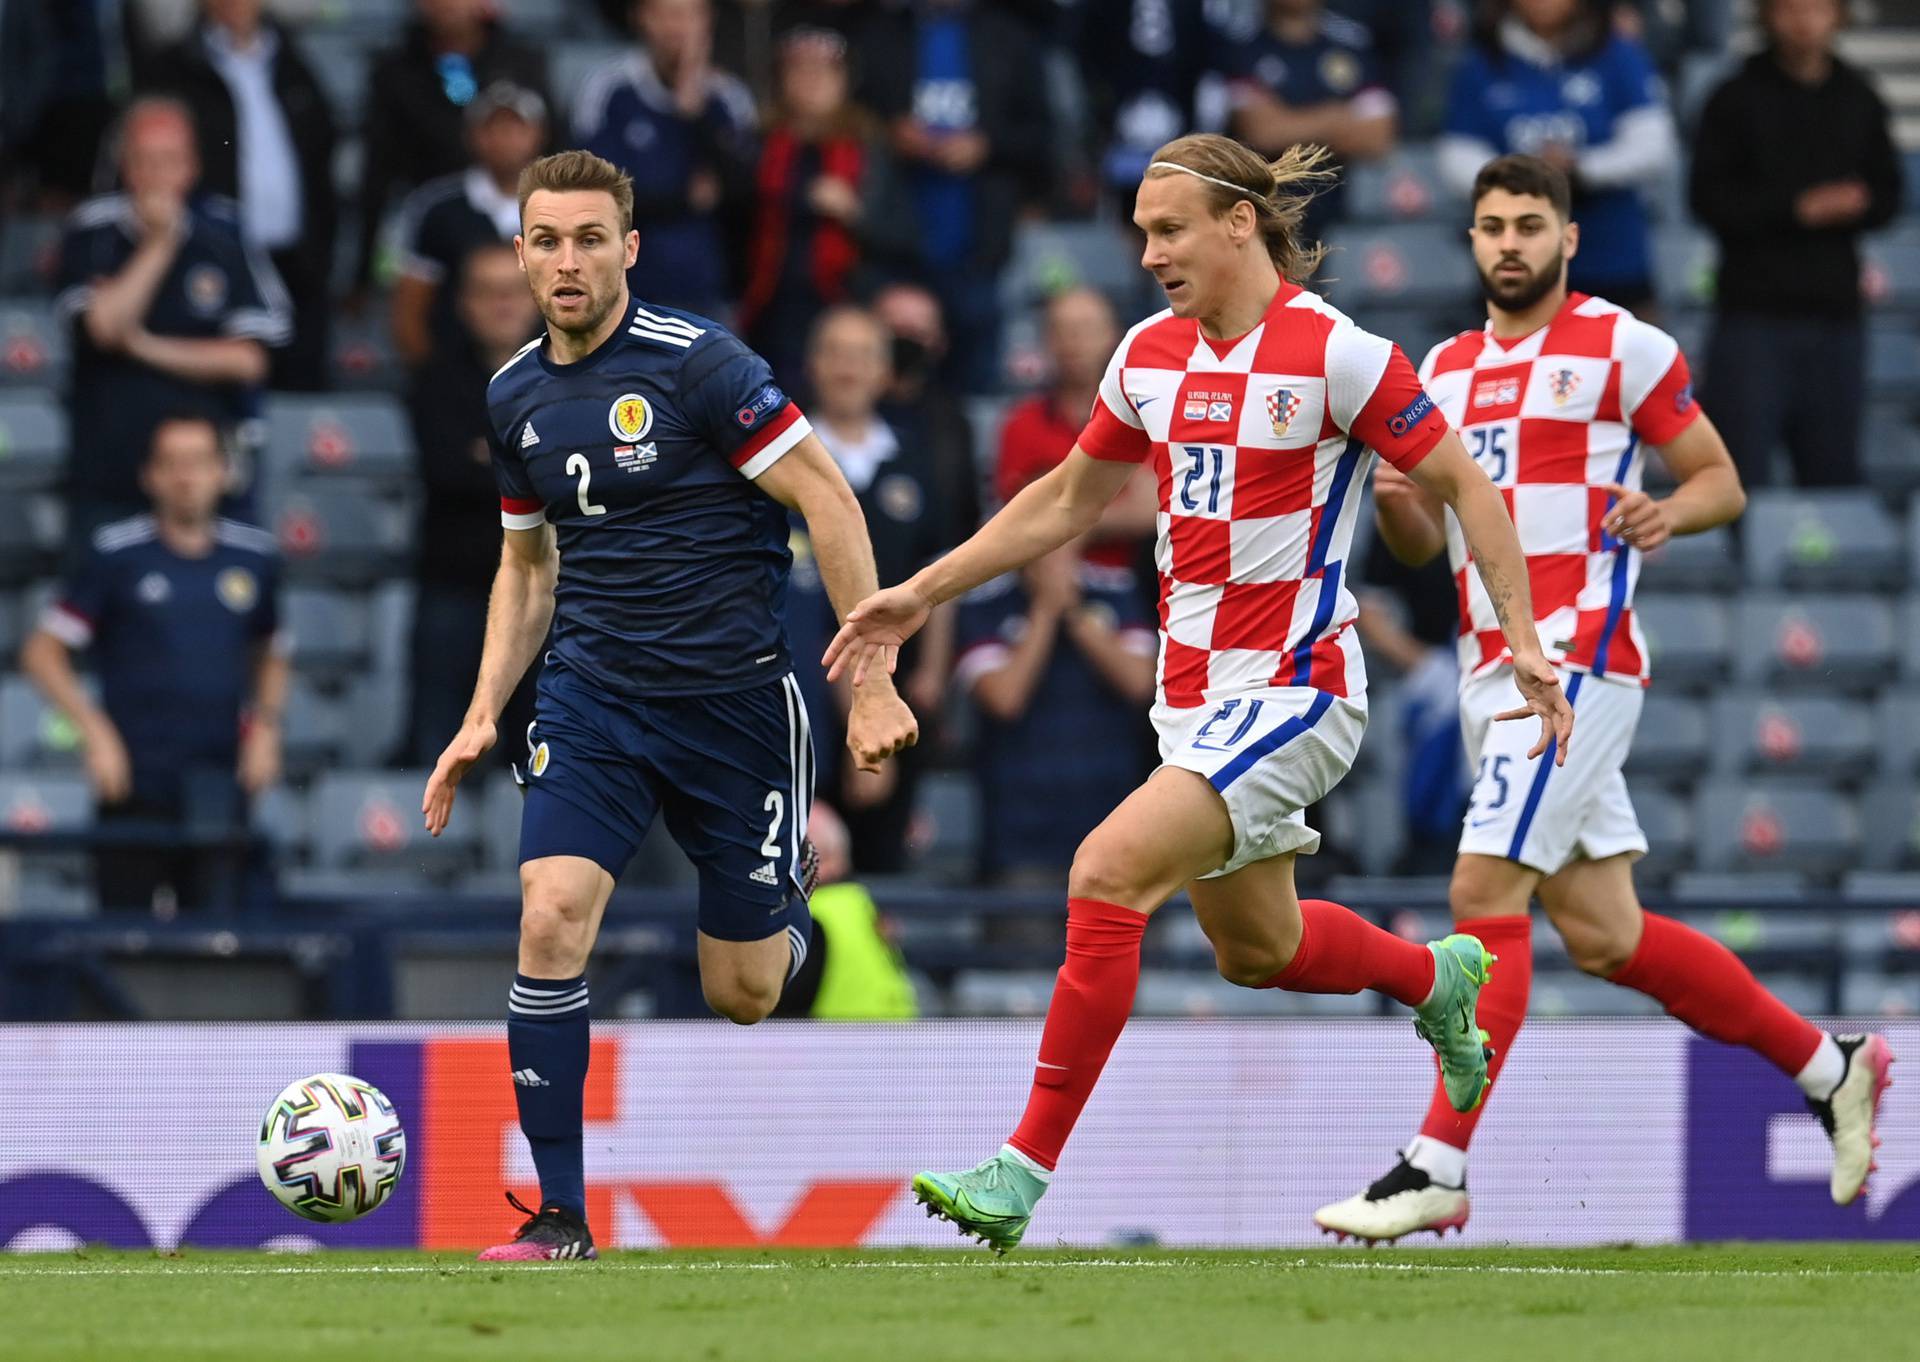 Euro 2020 - Group D - Croatia v Scotland